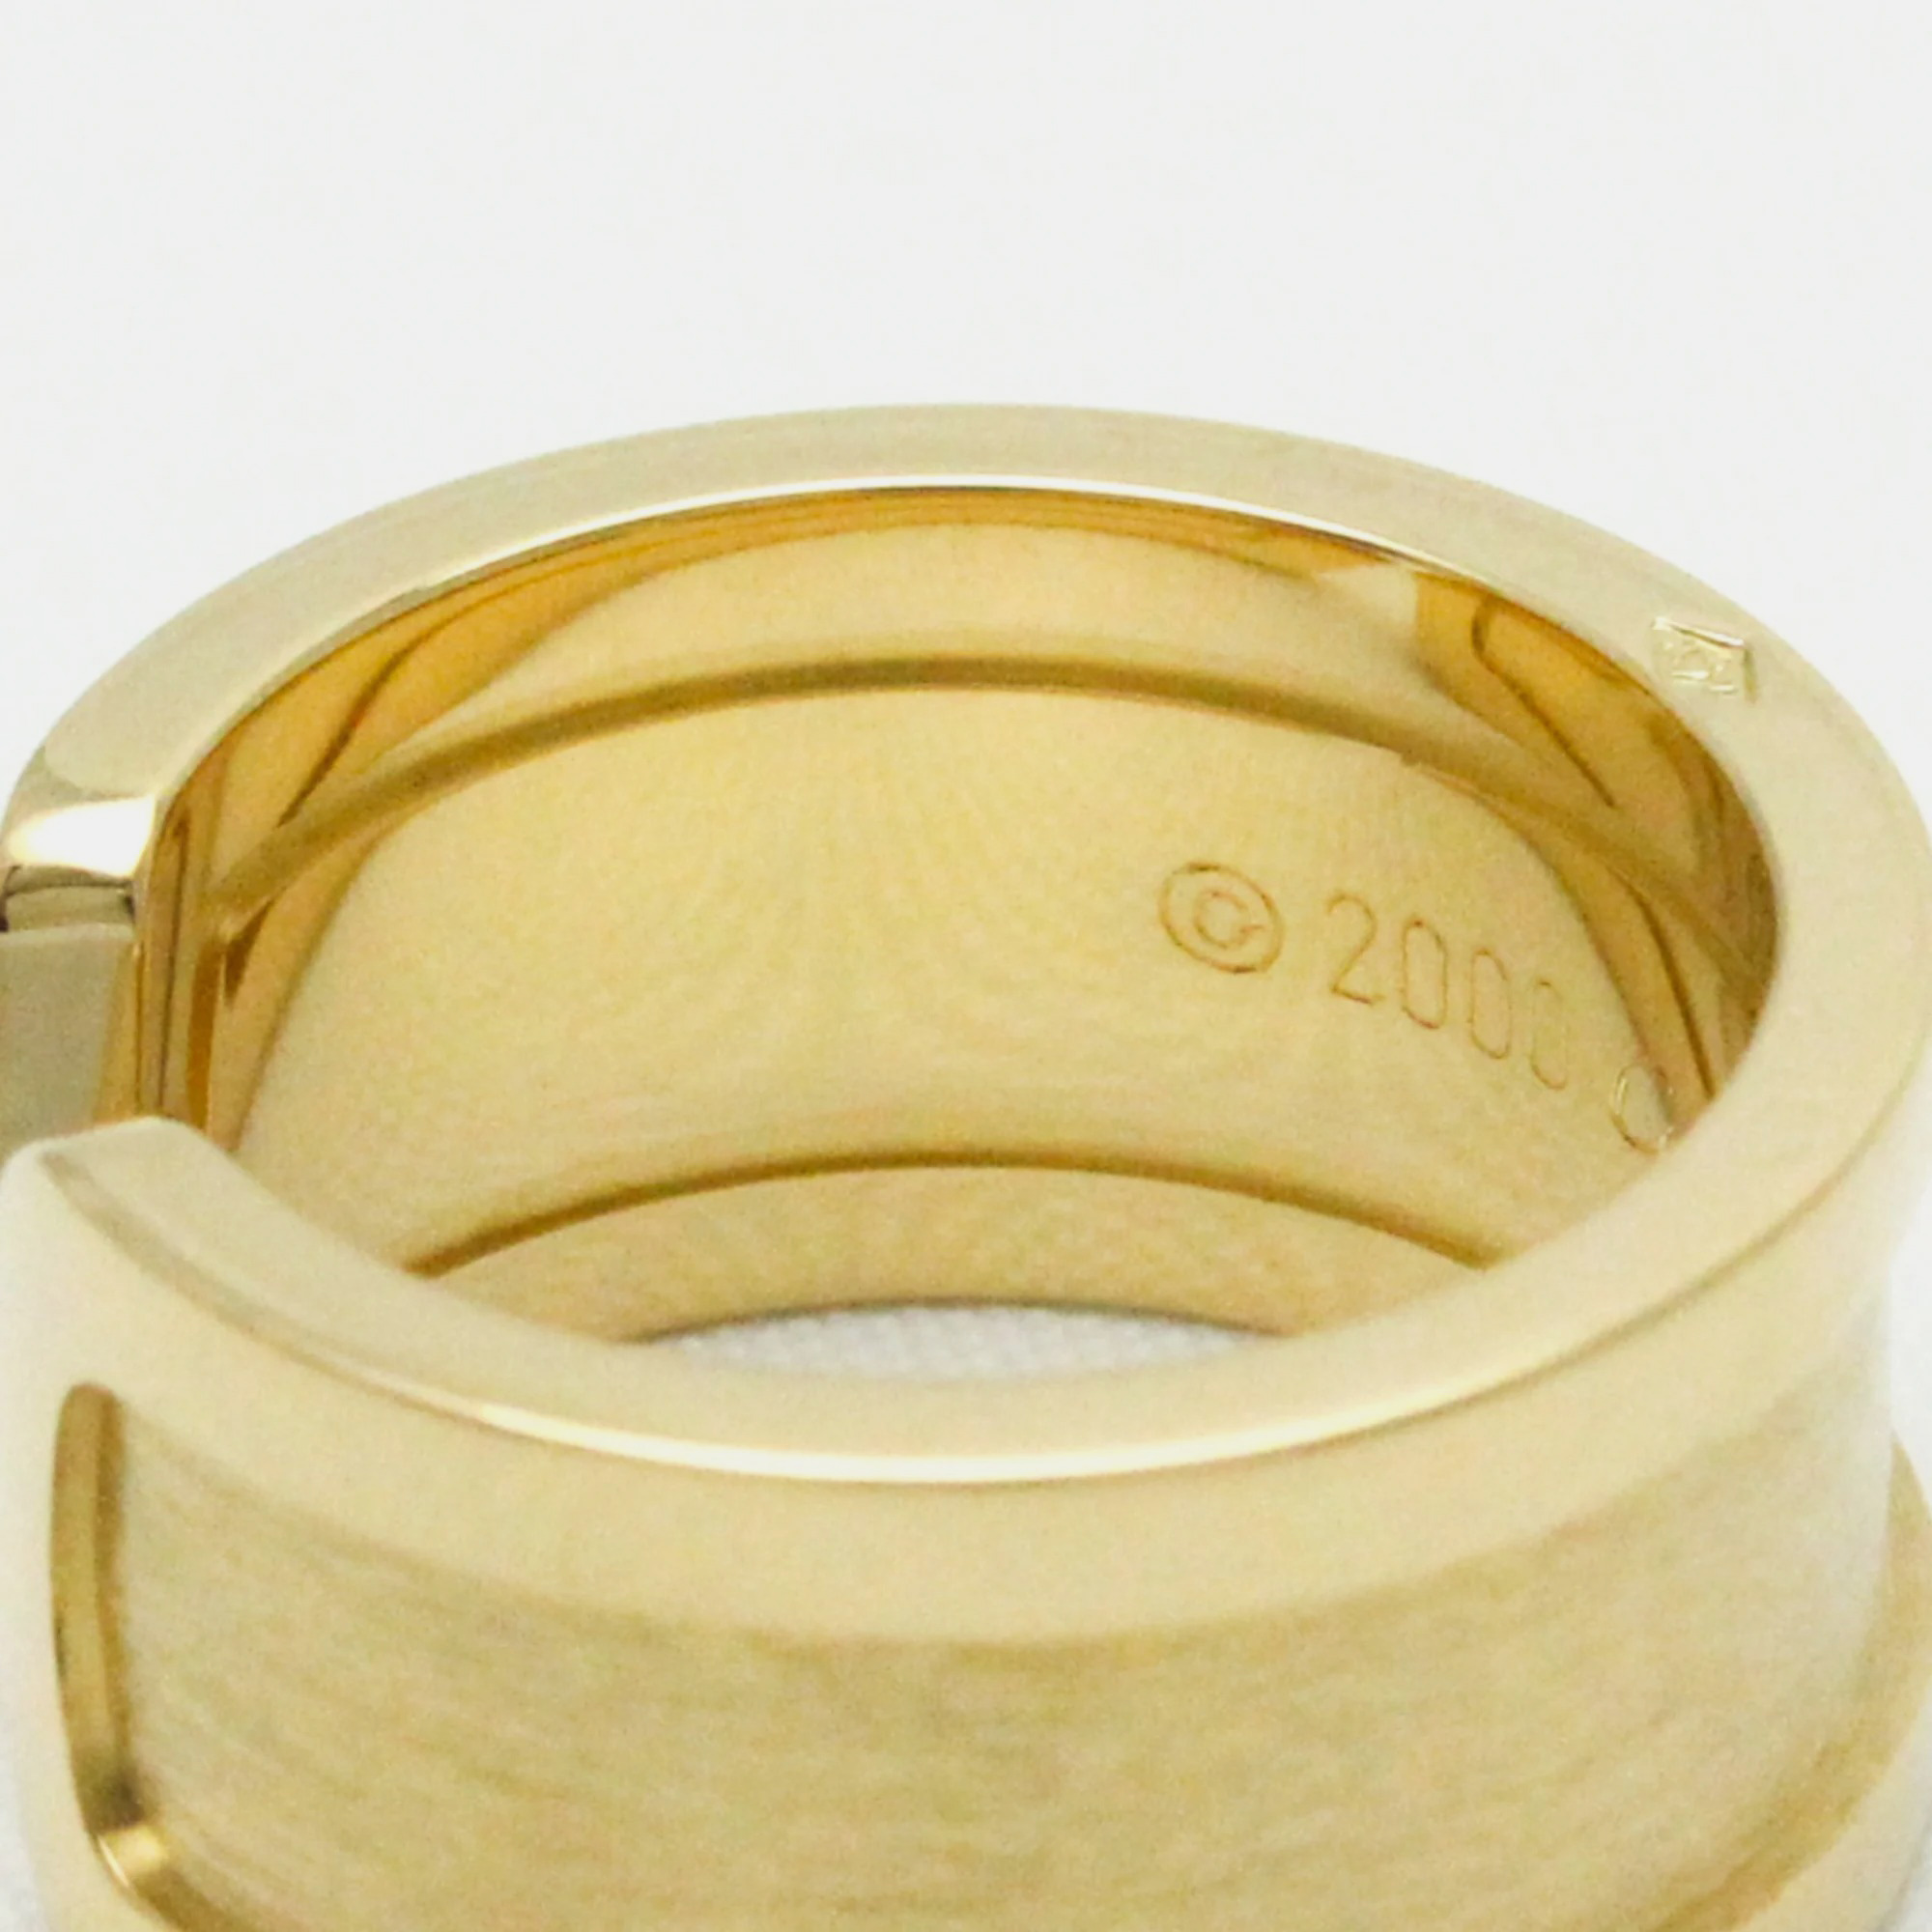 Cartier Double C Yellow Gold 18K Ring EU 51